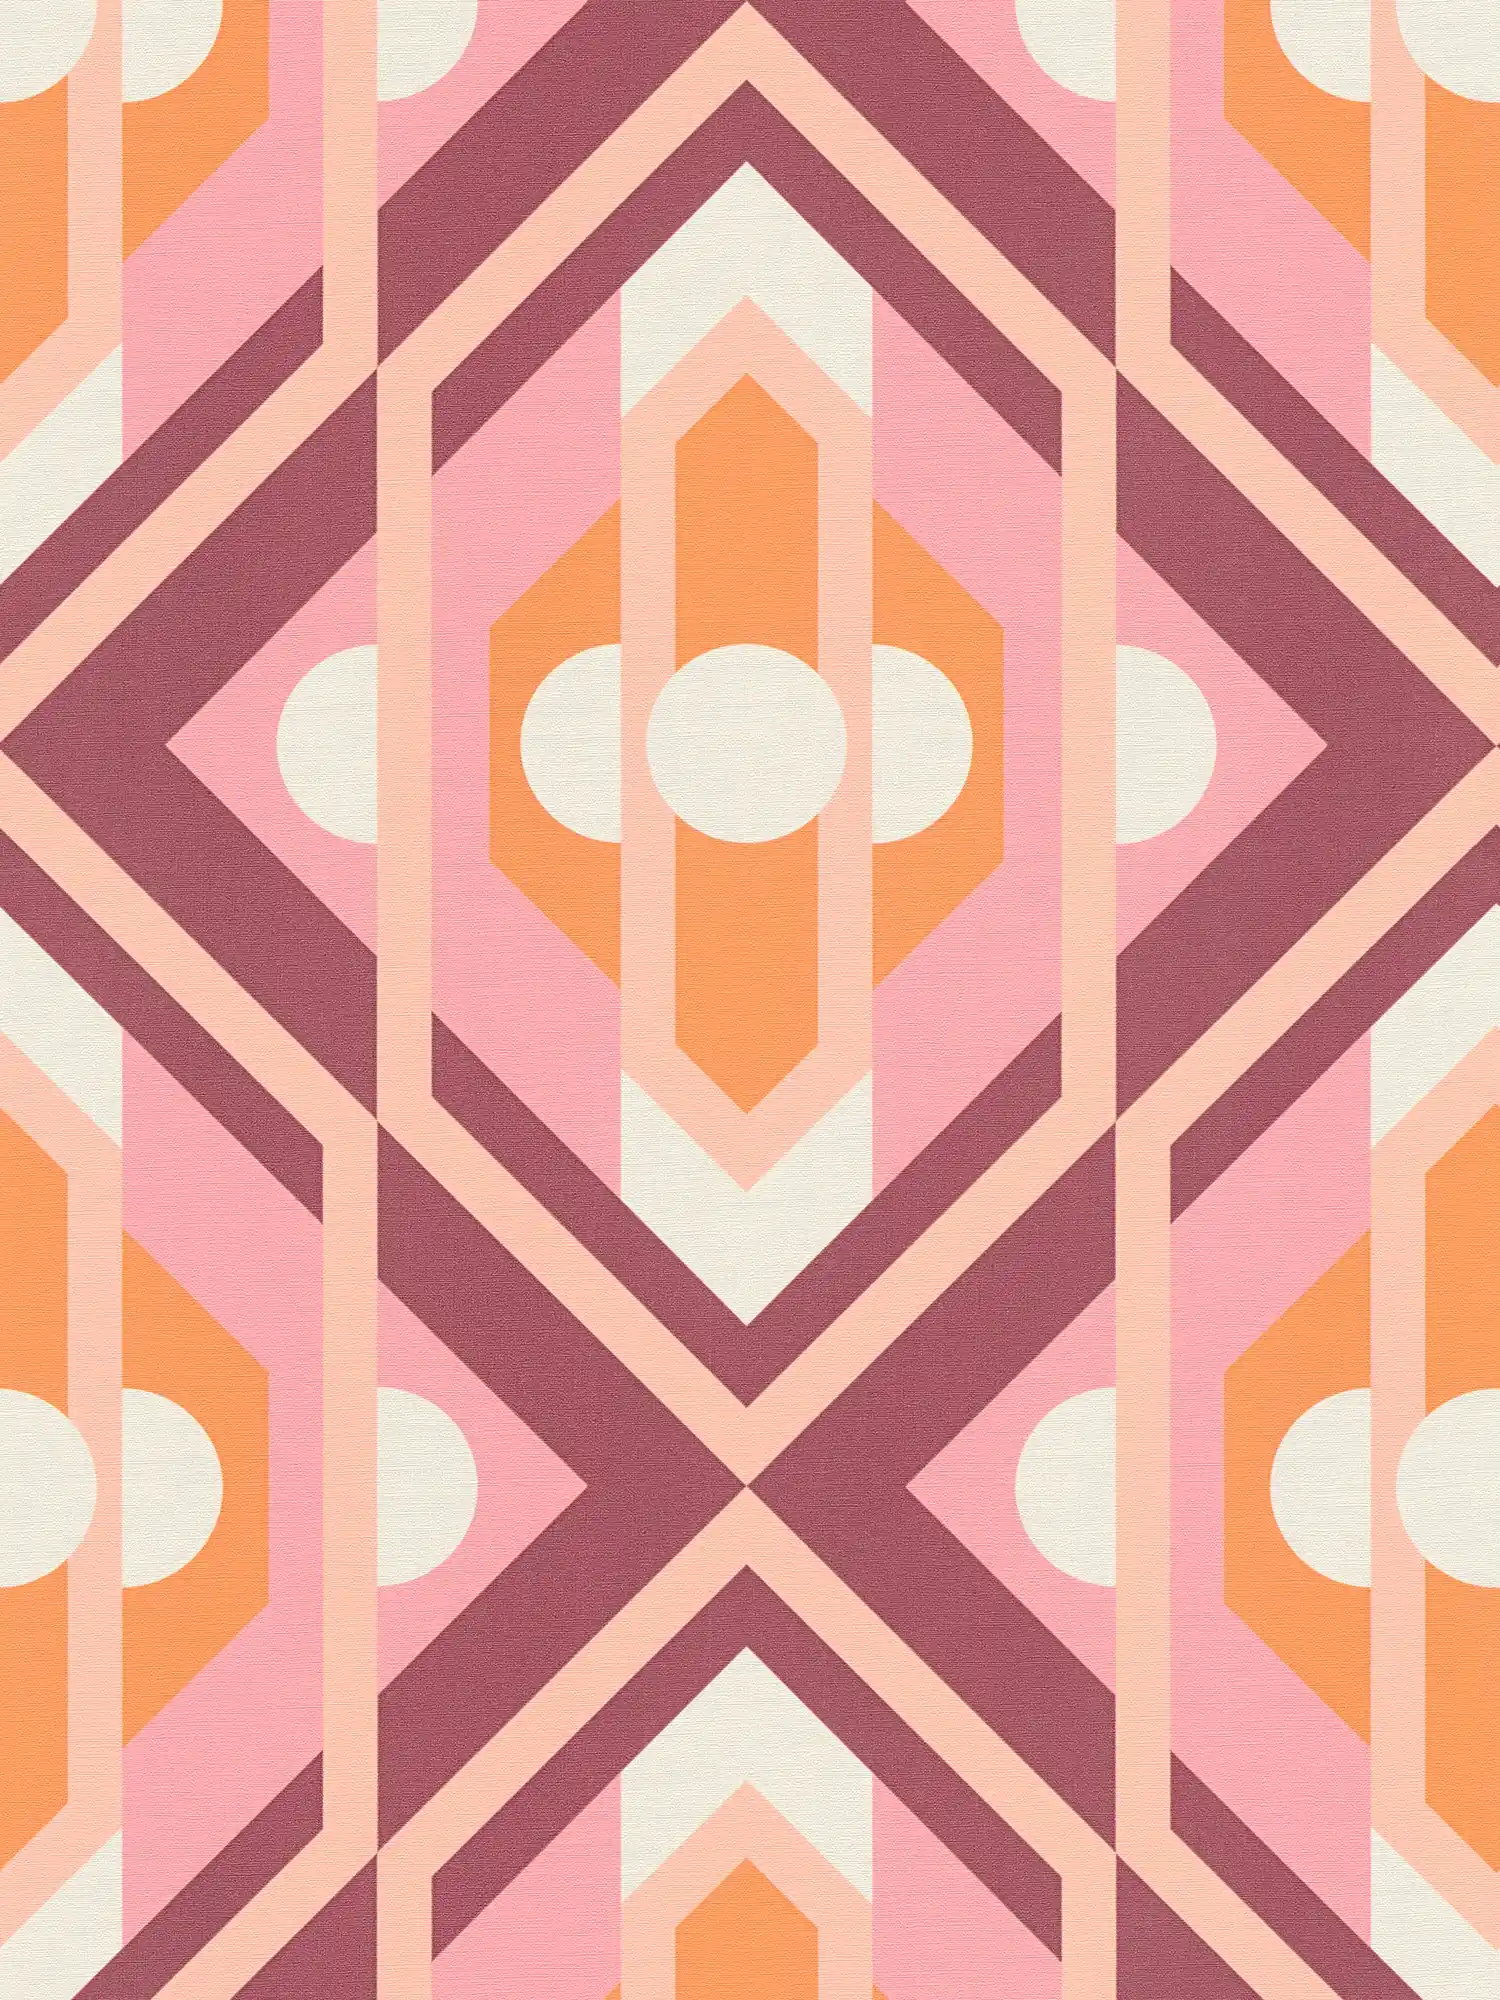         Papel pintado no tejido con ornamentos geométricos de estilo retro - naranja, rosa, blanco
    